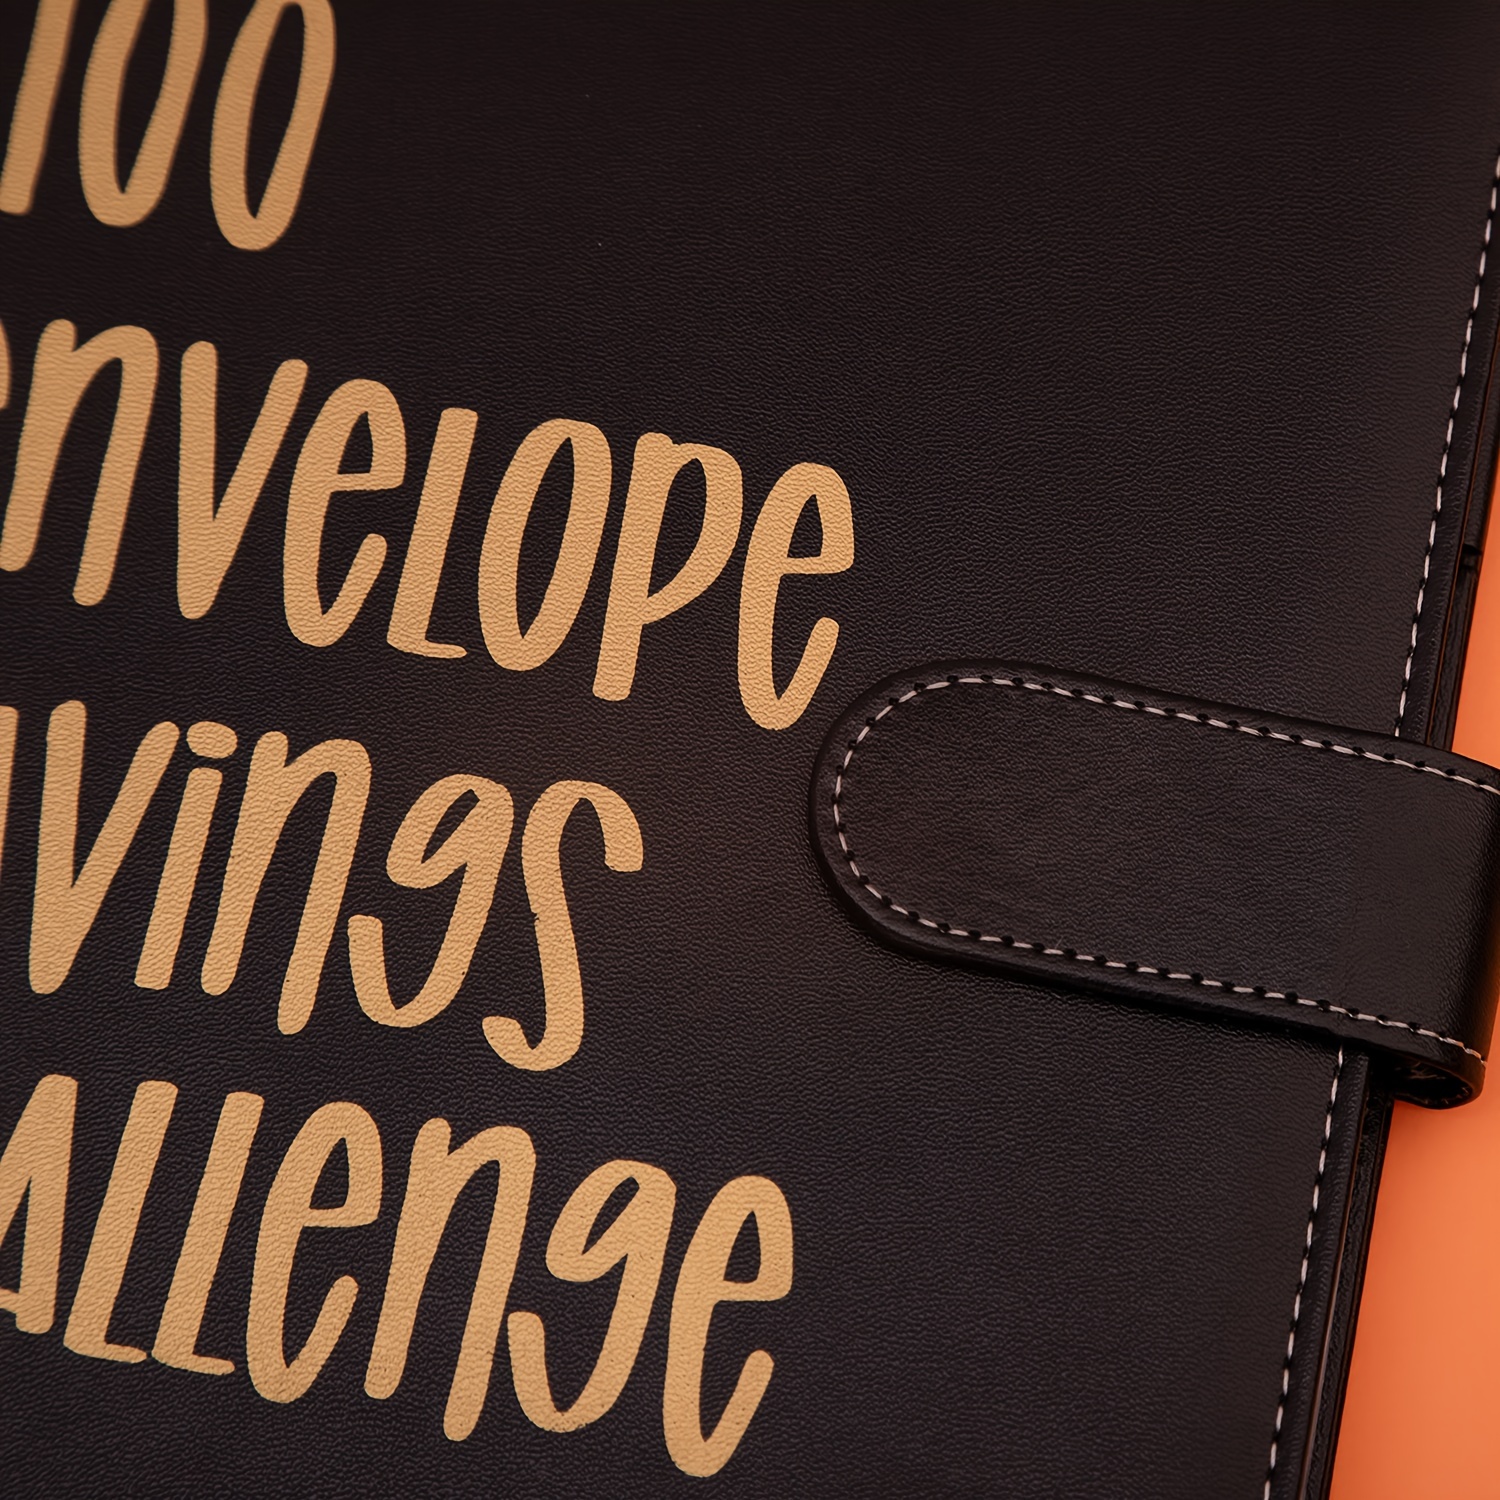 Carpeta de desafío de 100 sobres, forma fácil y divertida de ahorrar $  5,050, desafíos de ahorro Carpeta de libros de presupuesto para planificar  presupuestos y ahorrar dinero